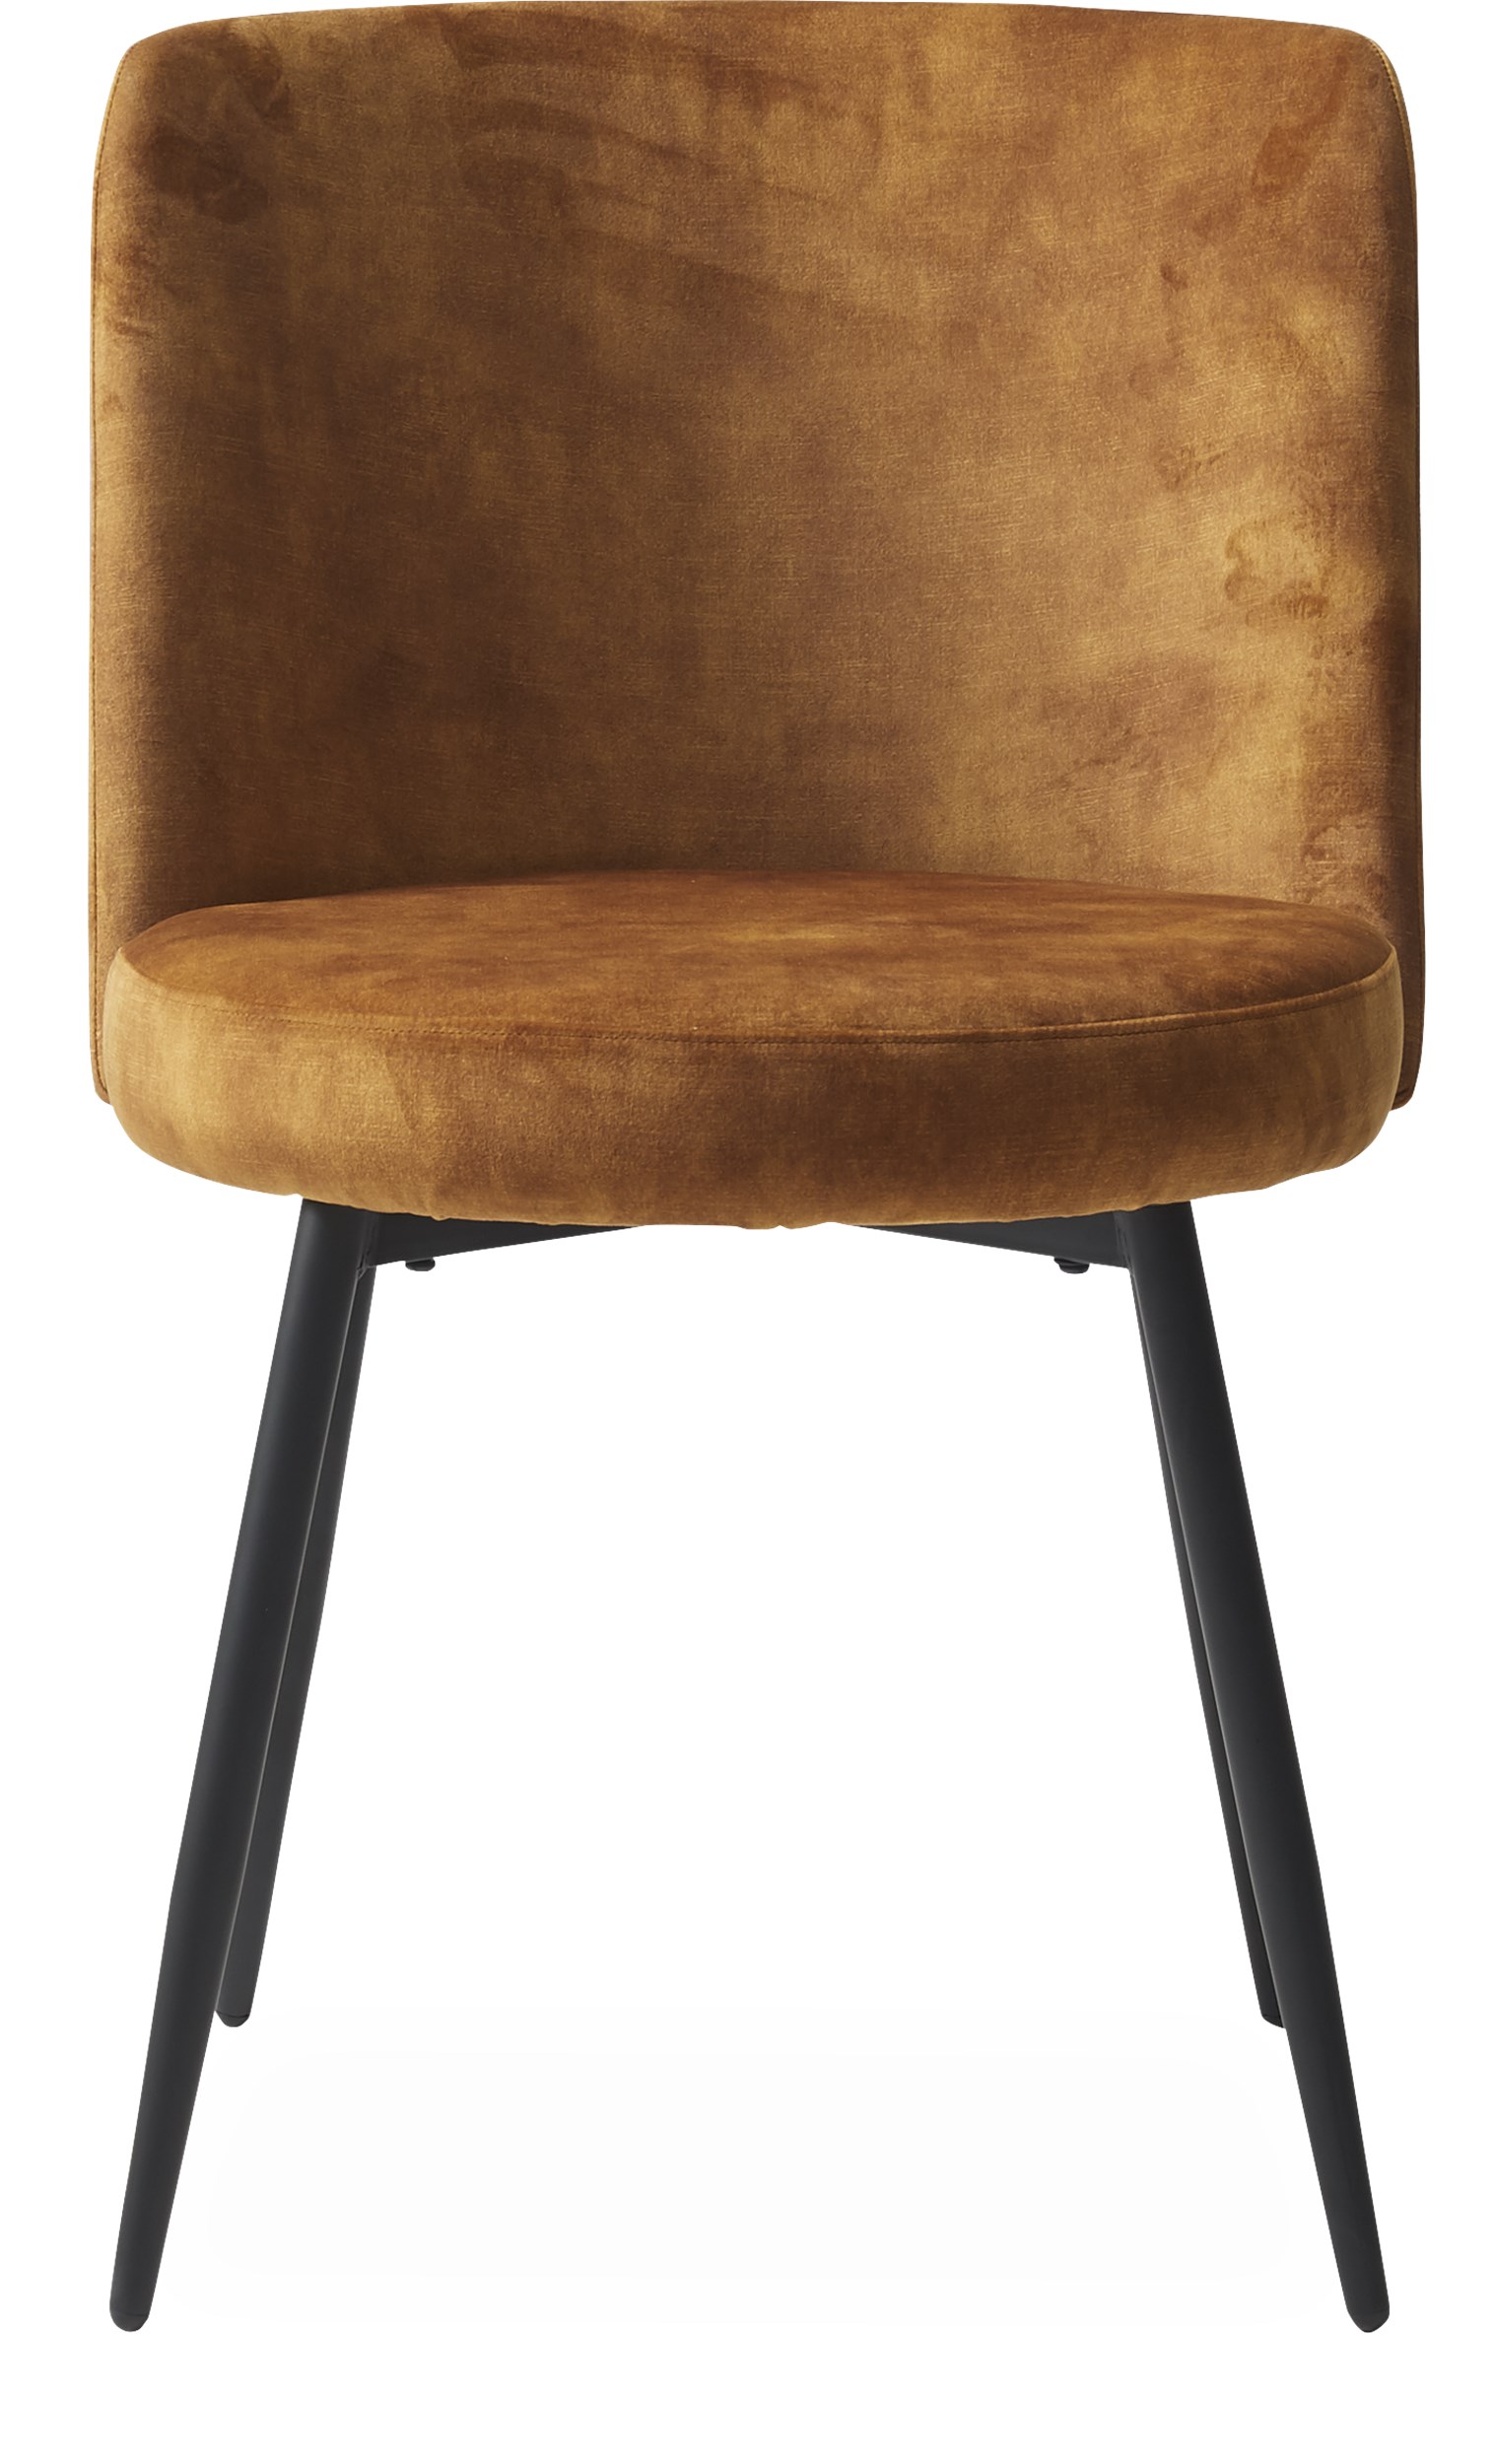 Bray Spisebordsstol - sæde i mustard yellow velour og ben i sort pulverlakeret metal